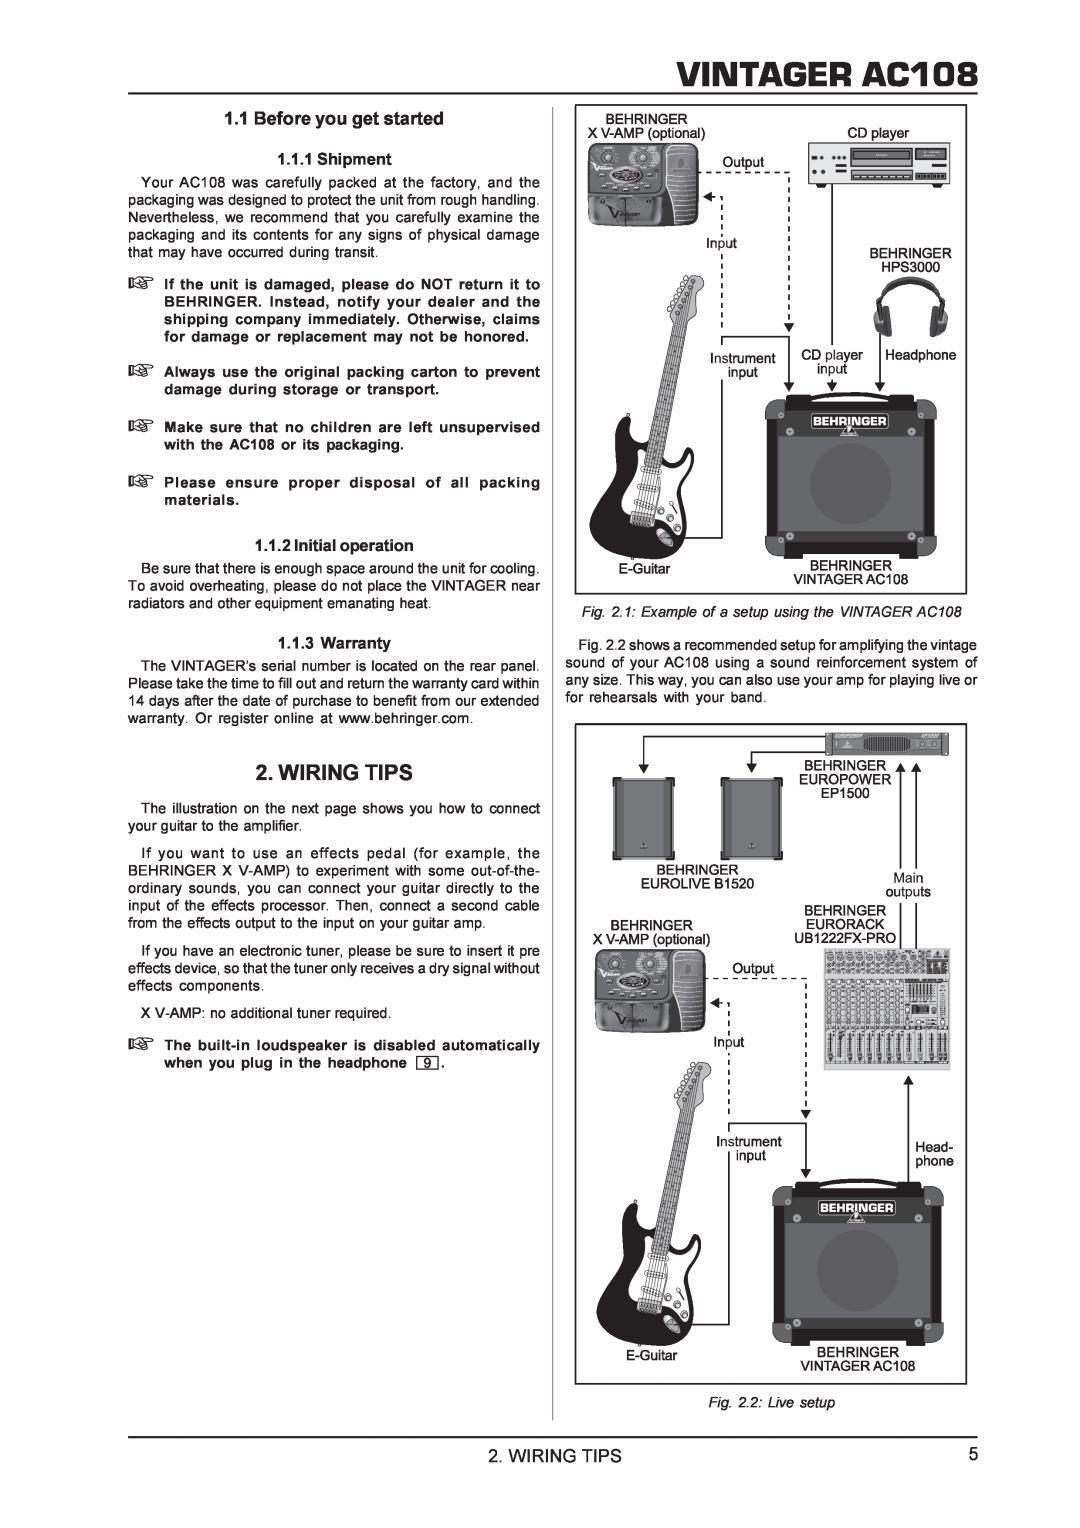 Behringer manual Wiring Tips, Before you get started, VINTAGER AC108, 2 Live setup 